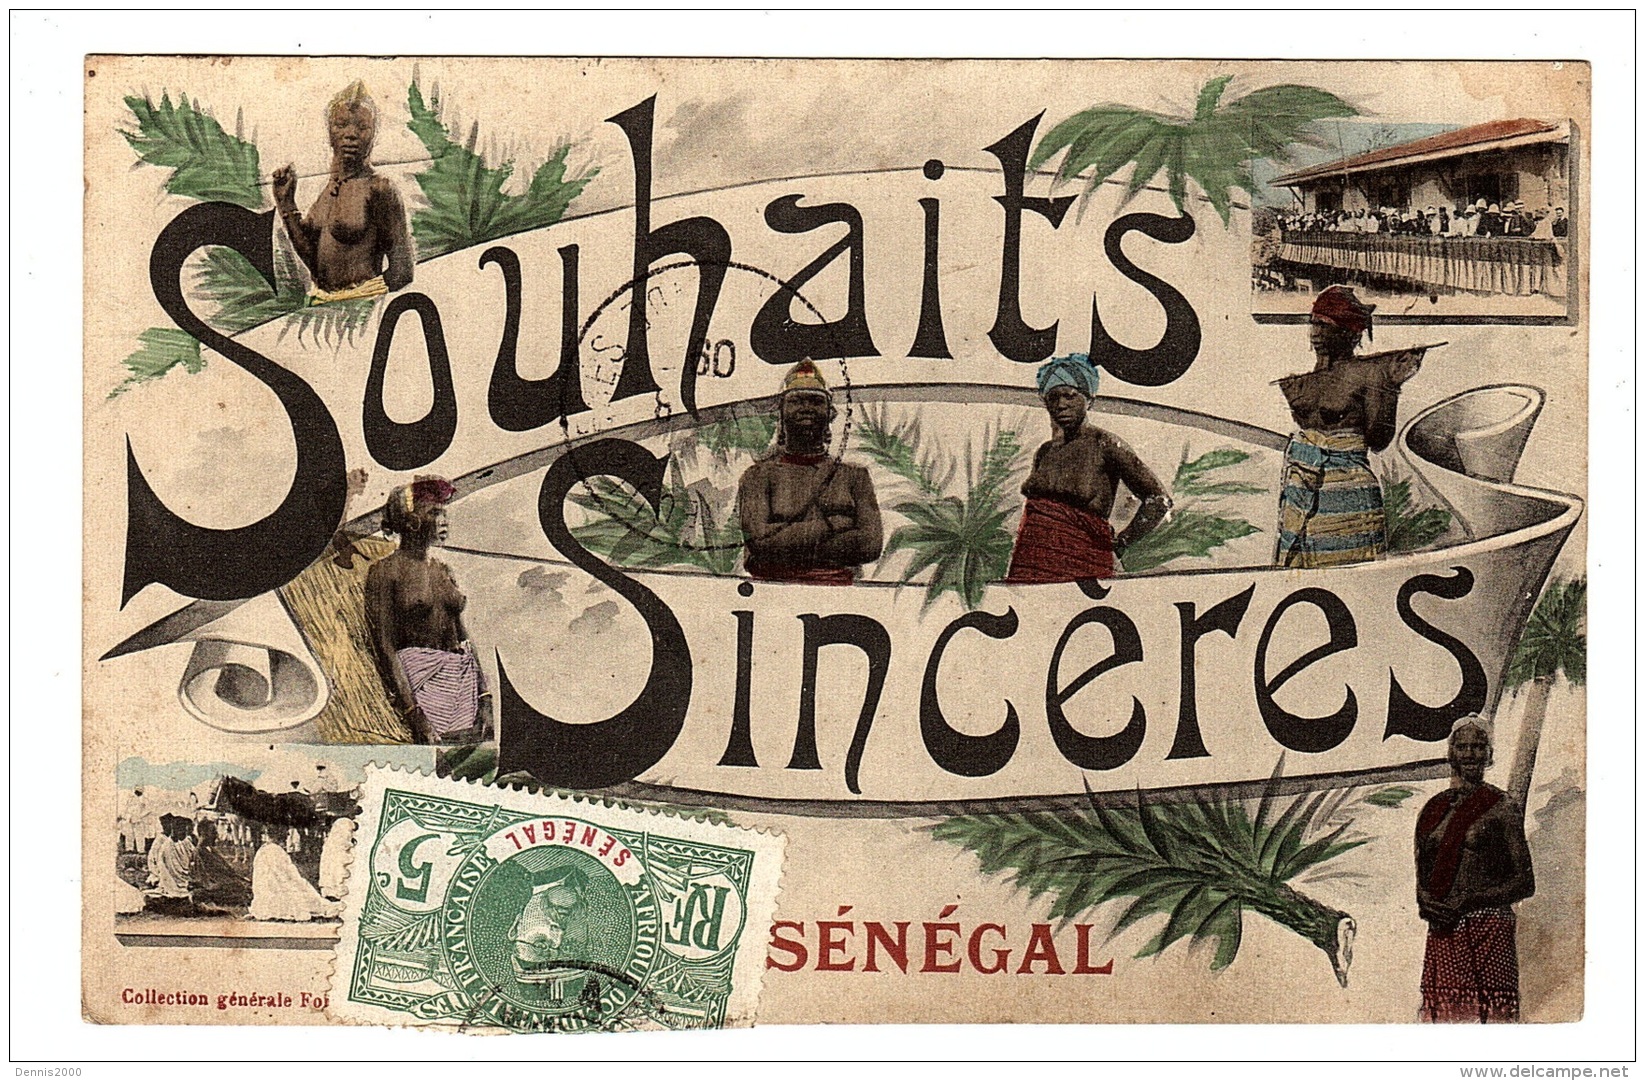 SÉNÉGAL - Carte Fantaisie - SOUHAITS SINCÈRES DU SÉNÉGAL - Ed. Fortier - Senegal